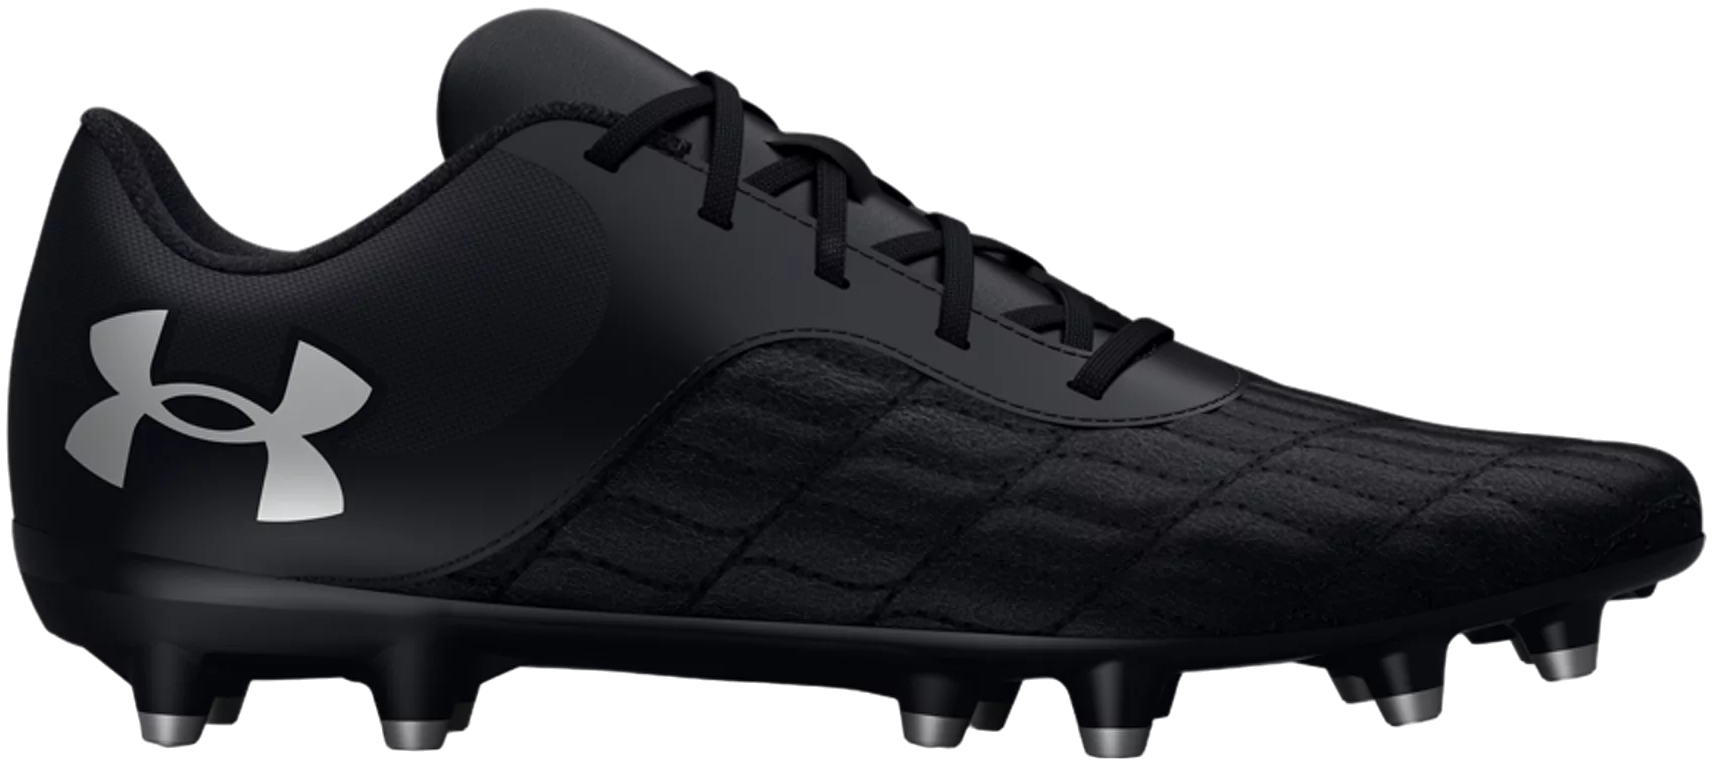 Ποδοσφαιρικά παπούτσια Under Armour Magnetico Select 3.0 FG